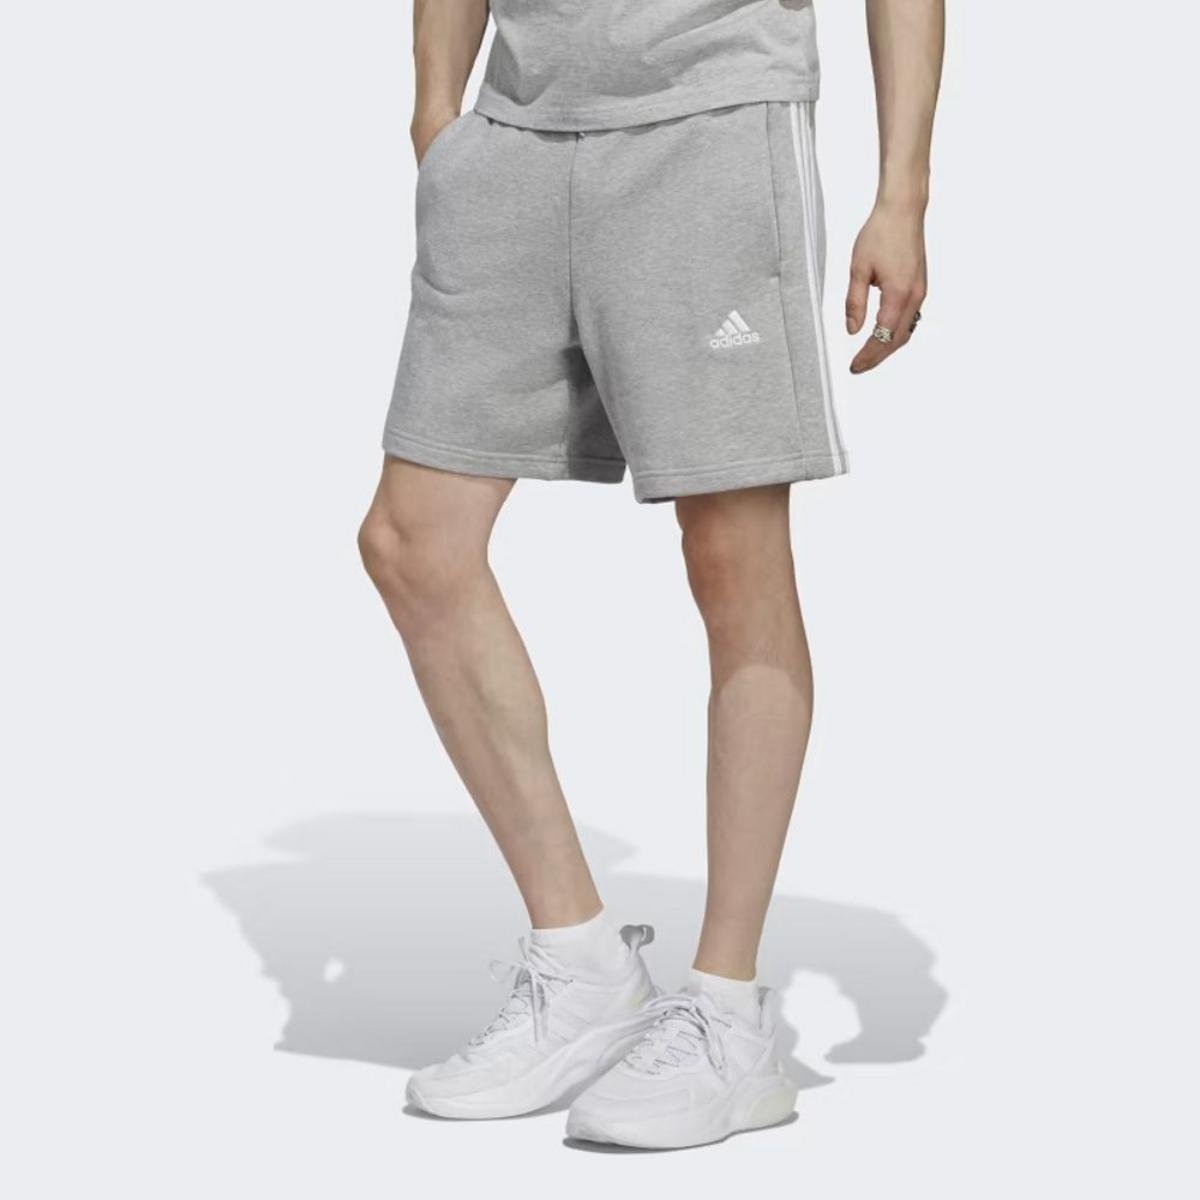 Shorts Essentials 3-Stripes adidas - Compre Agora